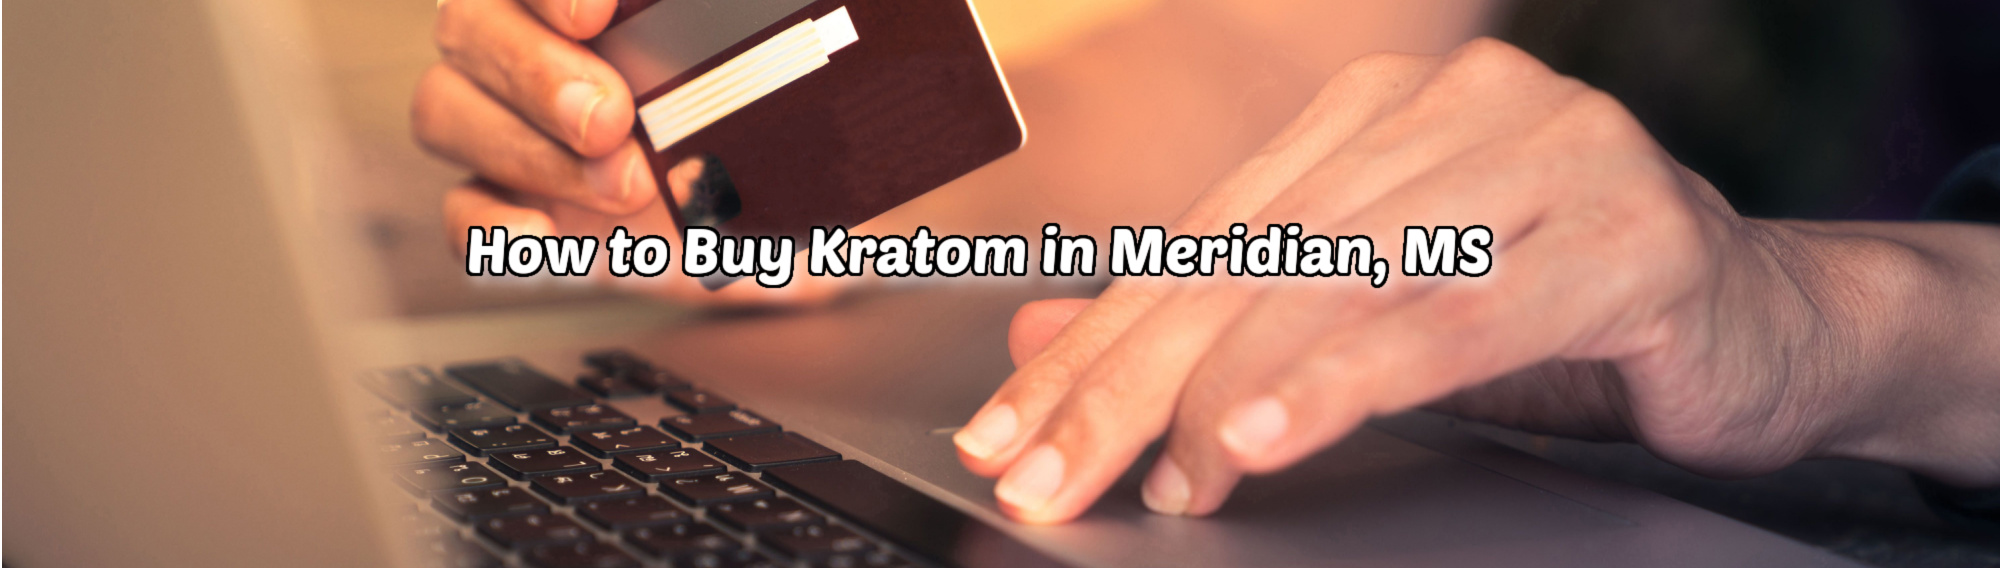 image of how to buy kratom in meridian ms